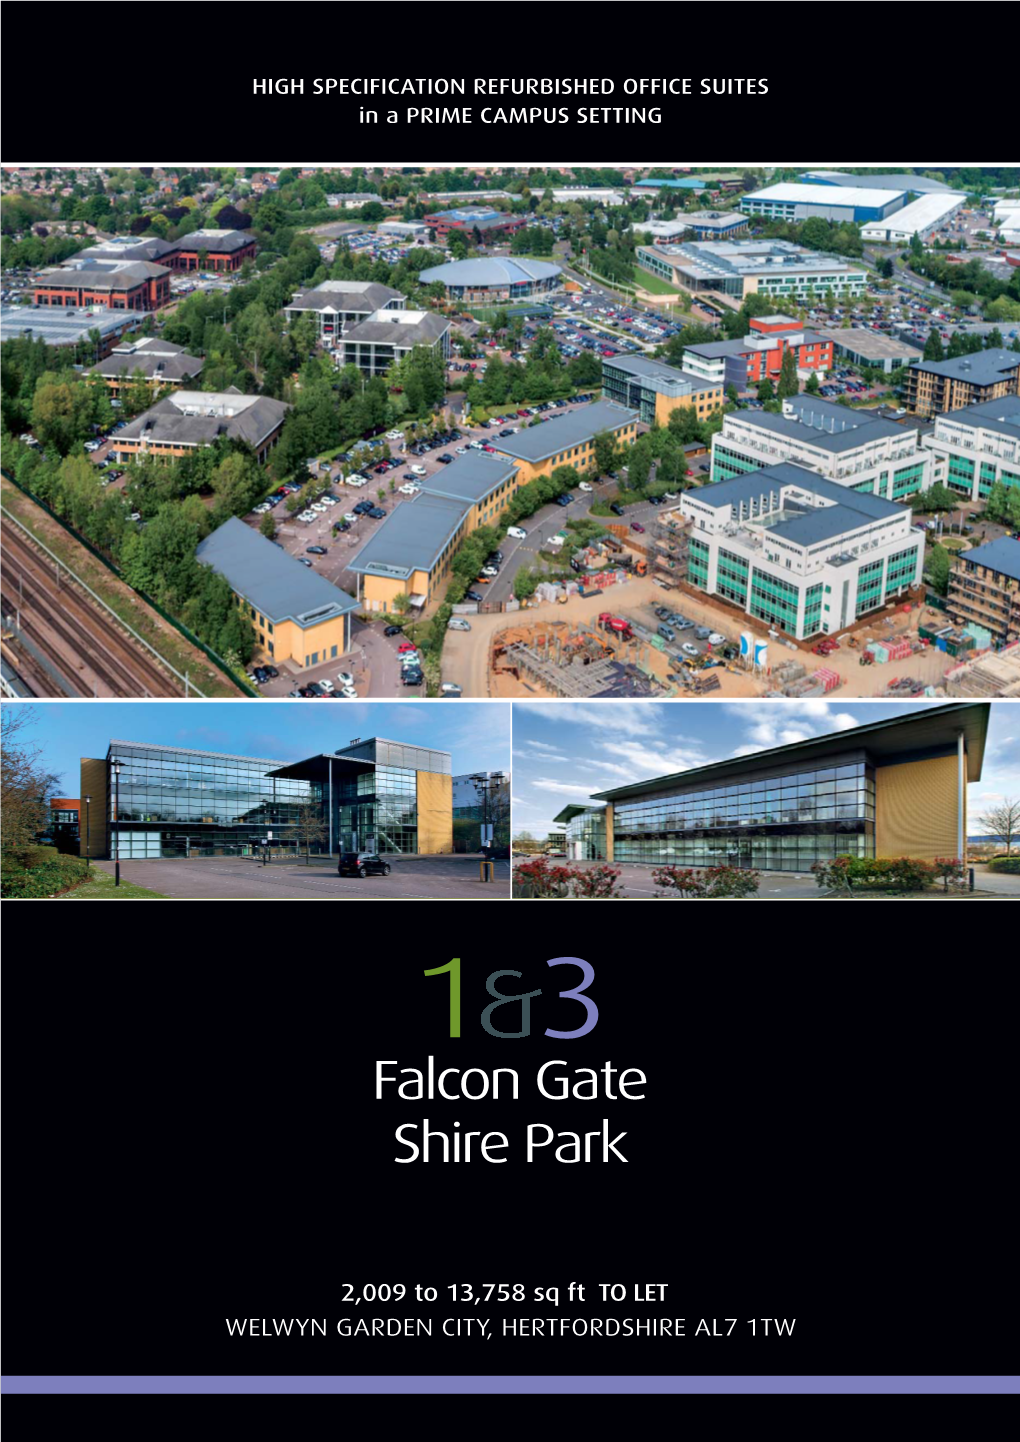 Falcon Gate Shire Park